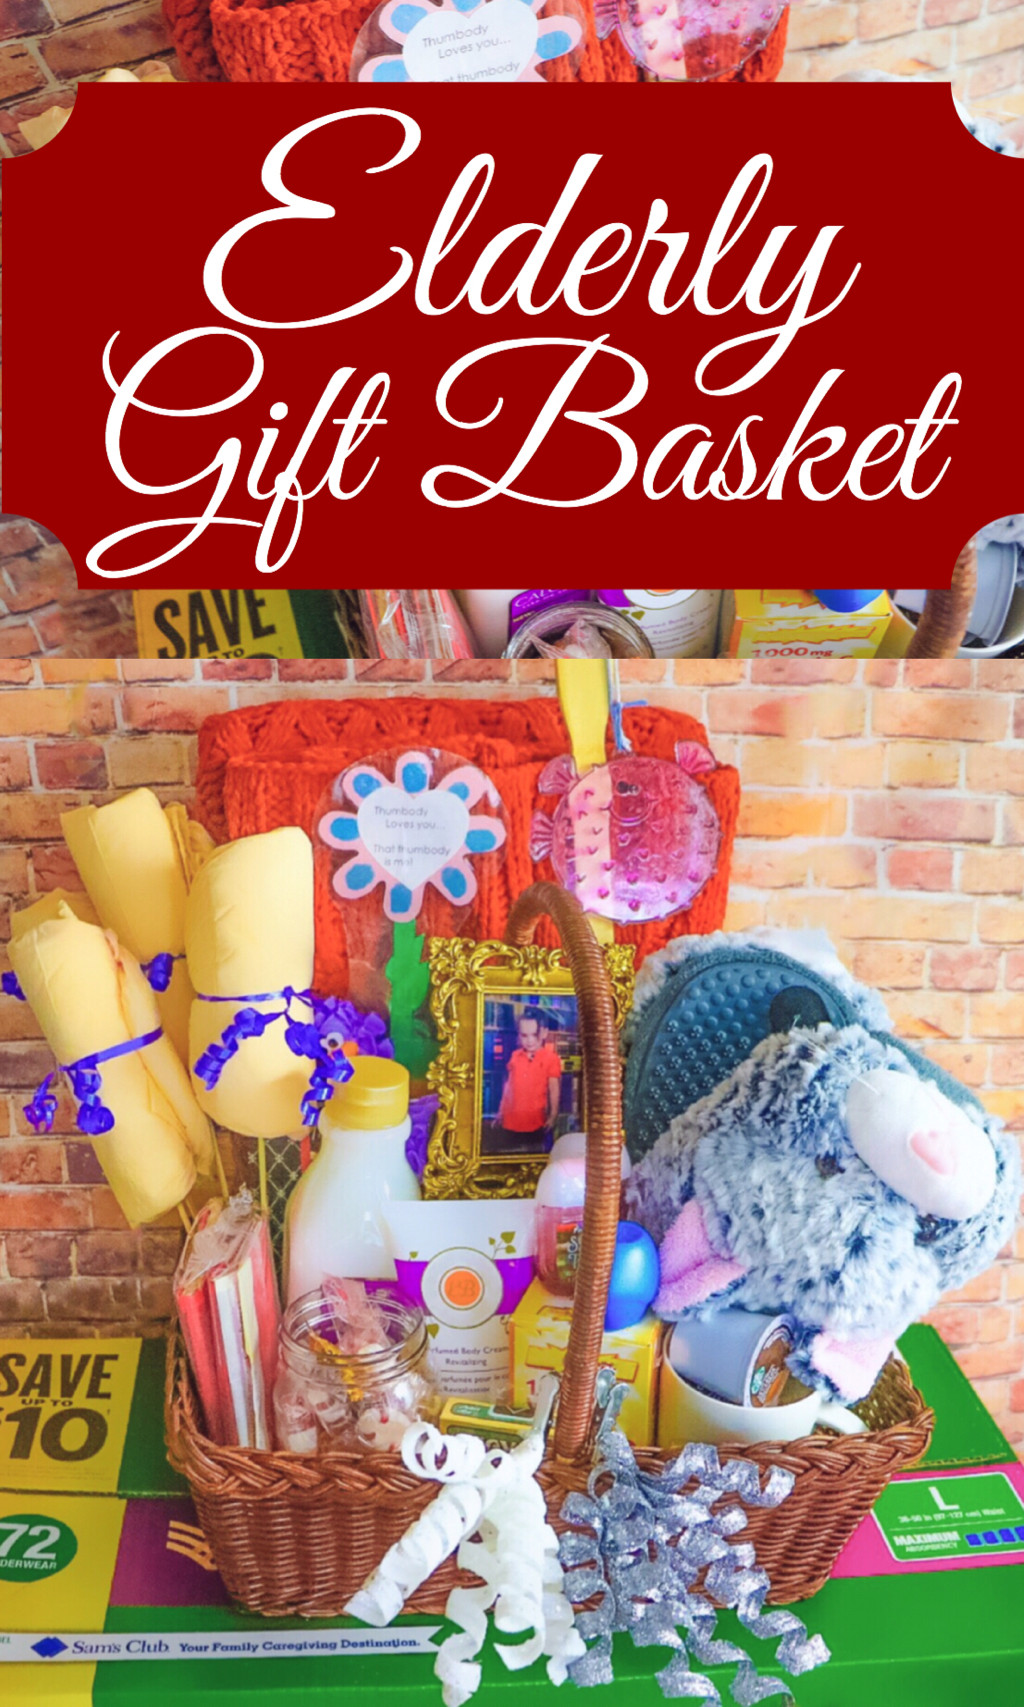 Gift Basket Ideas For Senior Citizens
 ELDERLY GIFT BASKET MyCareGivingStory cBias ad